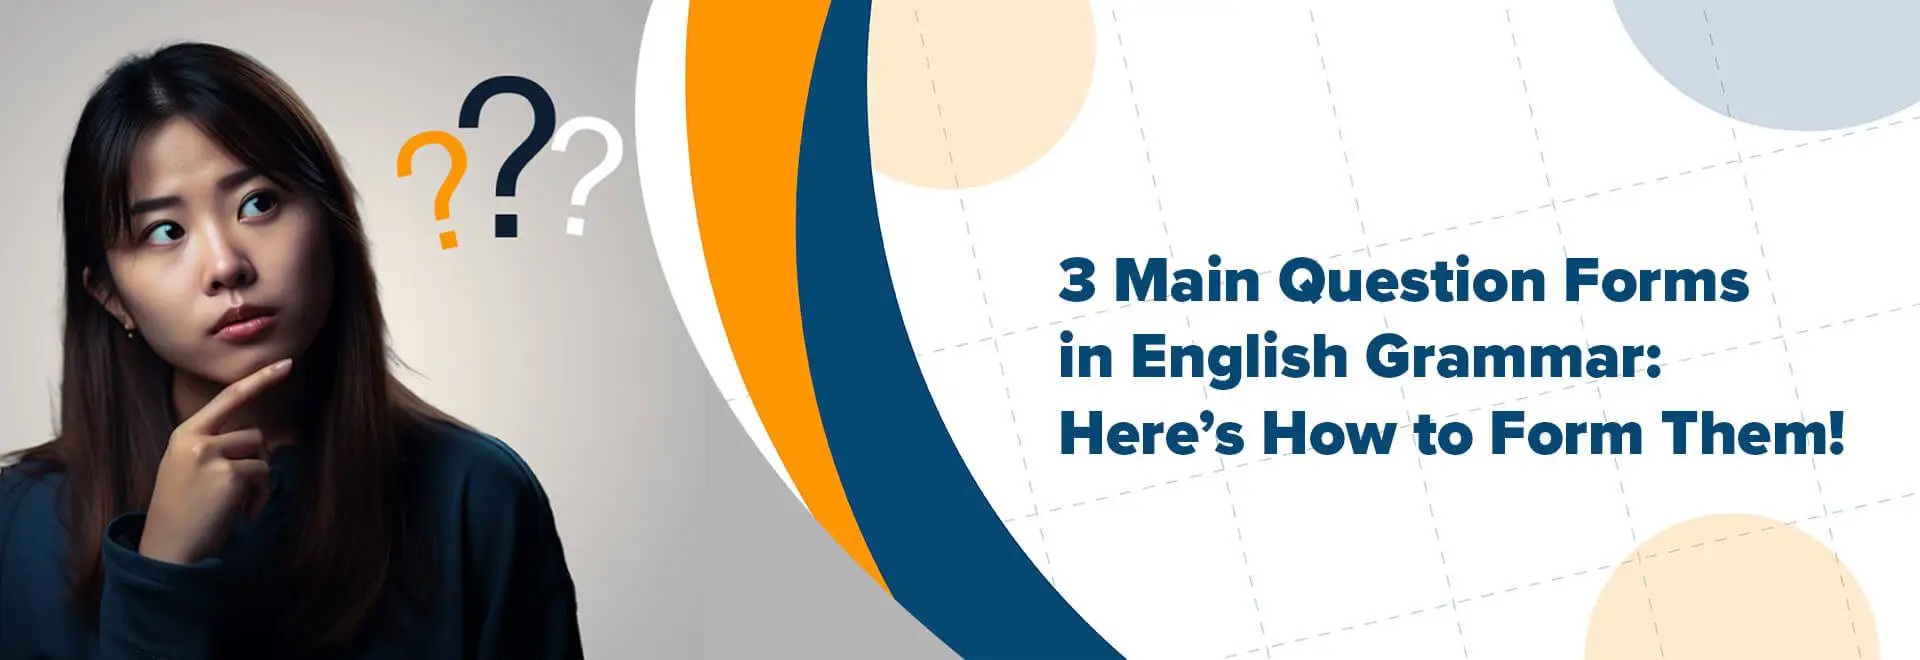 Англи хэлний дүрмэн дэх 3 гол асуултын төрөл: Энд эдгээр дүрмүүд байна!